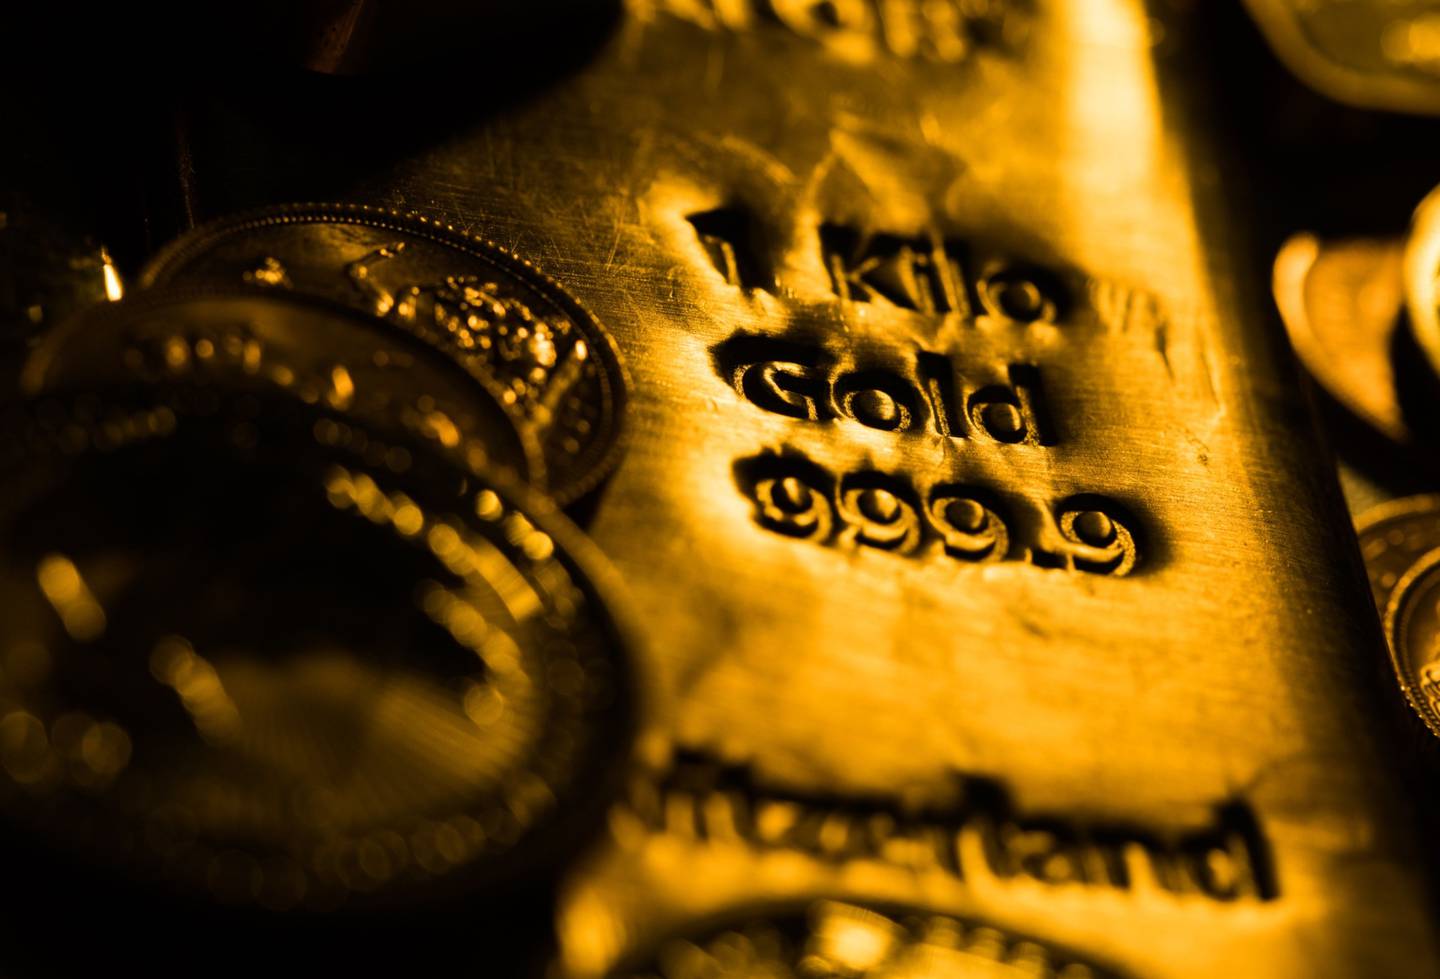 Un lingote de oro de un kilogramo se encuentra en los distribuidores de lingotes de Gold Investments Ltd. en esta fotografía arreglada en Londres, Reino Unido, el miércoles 29 de julio de 2020.